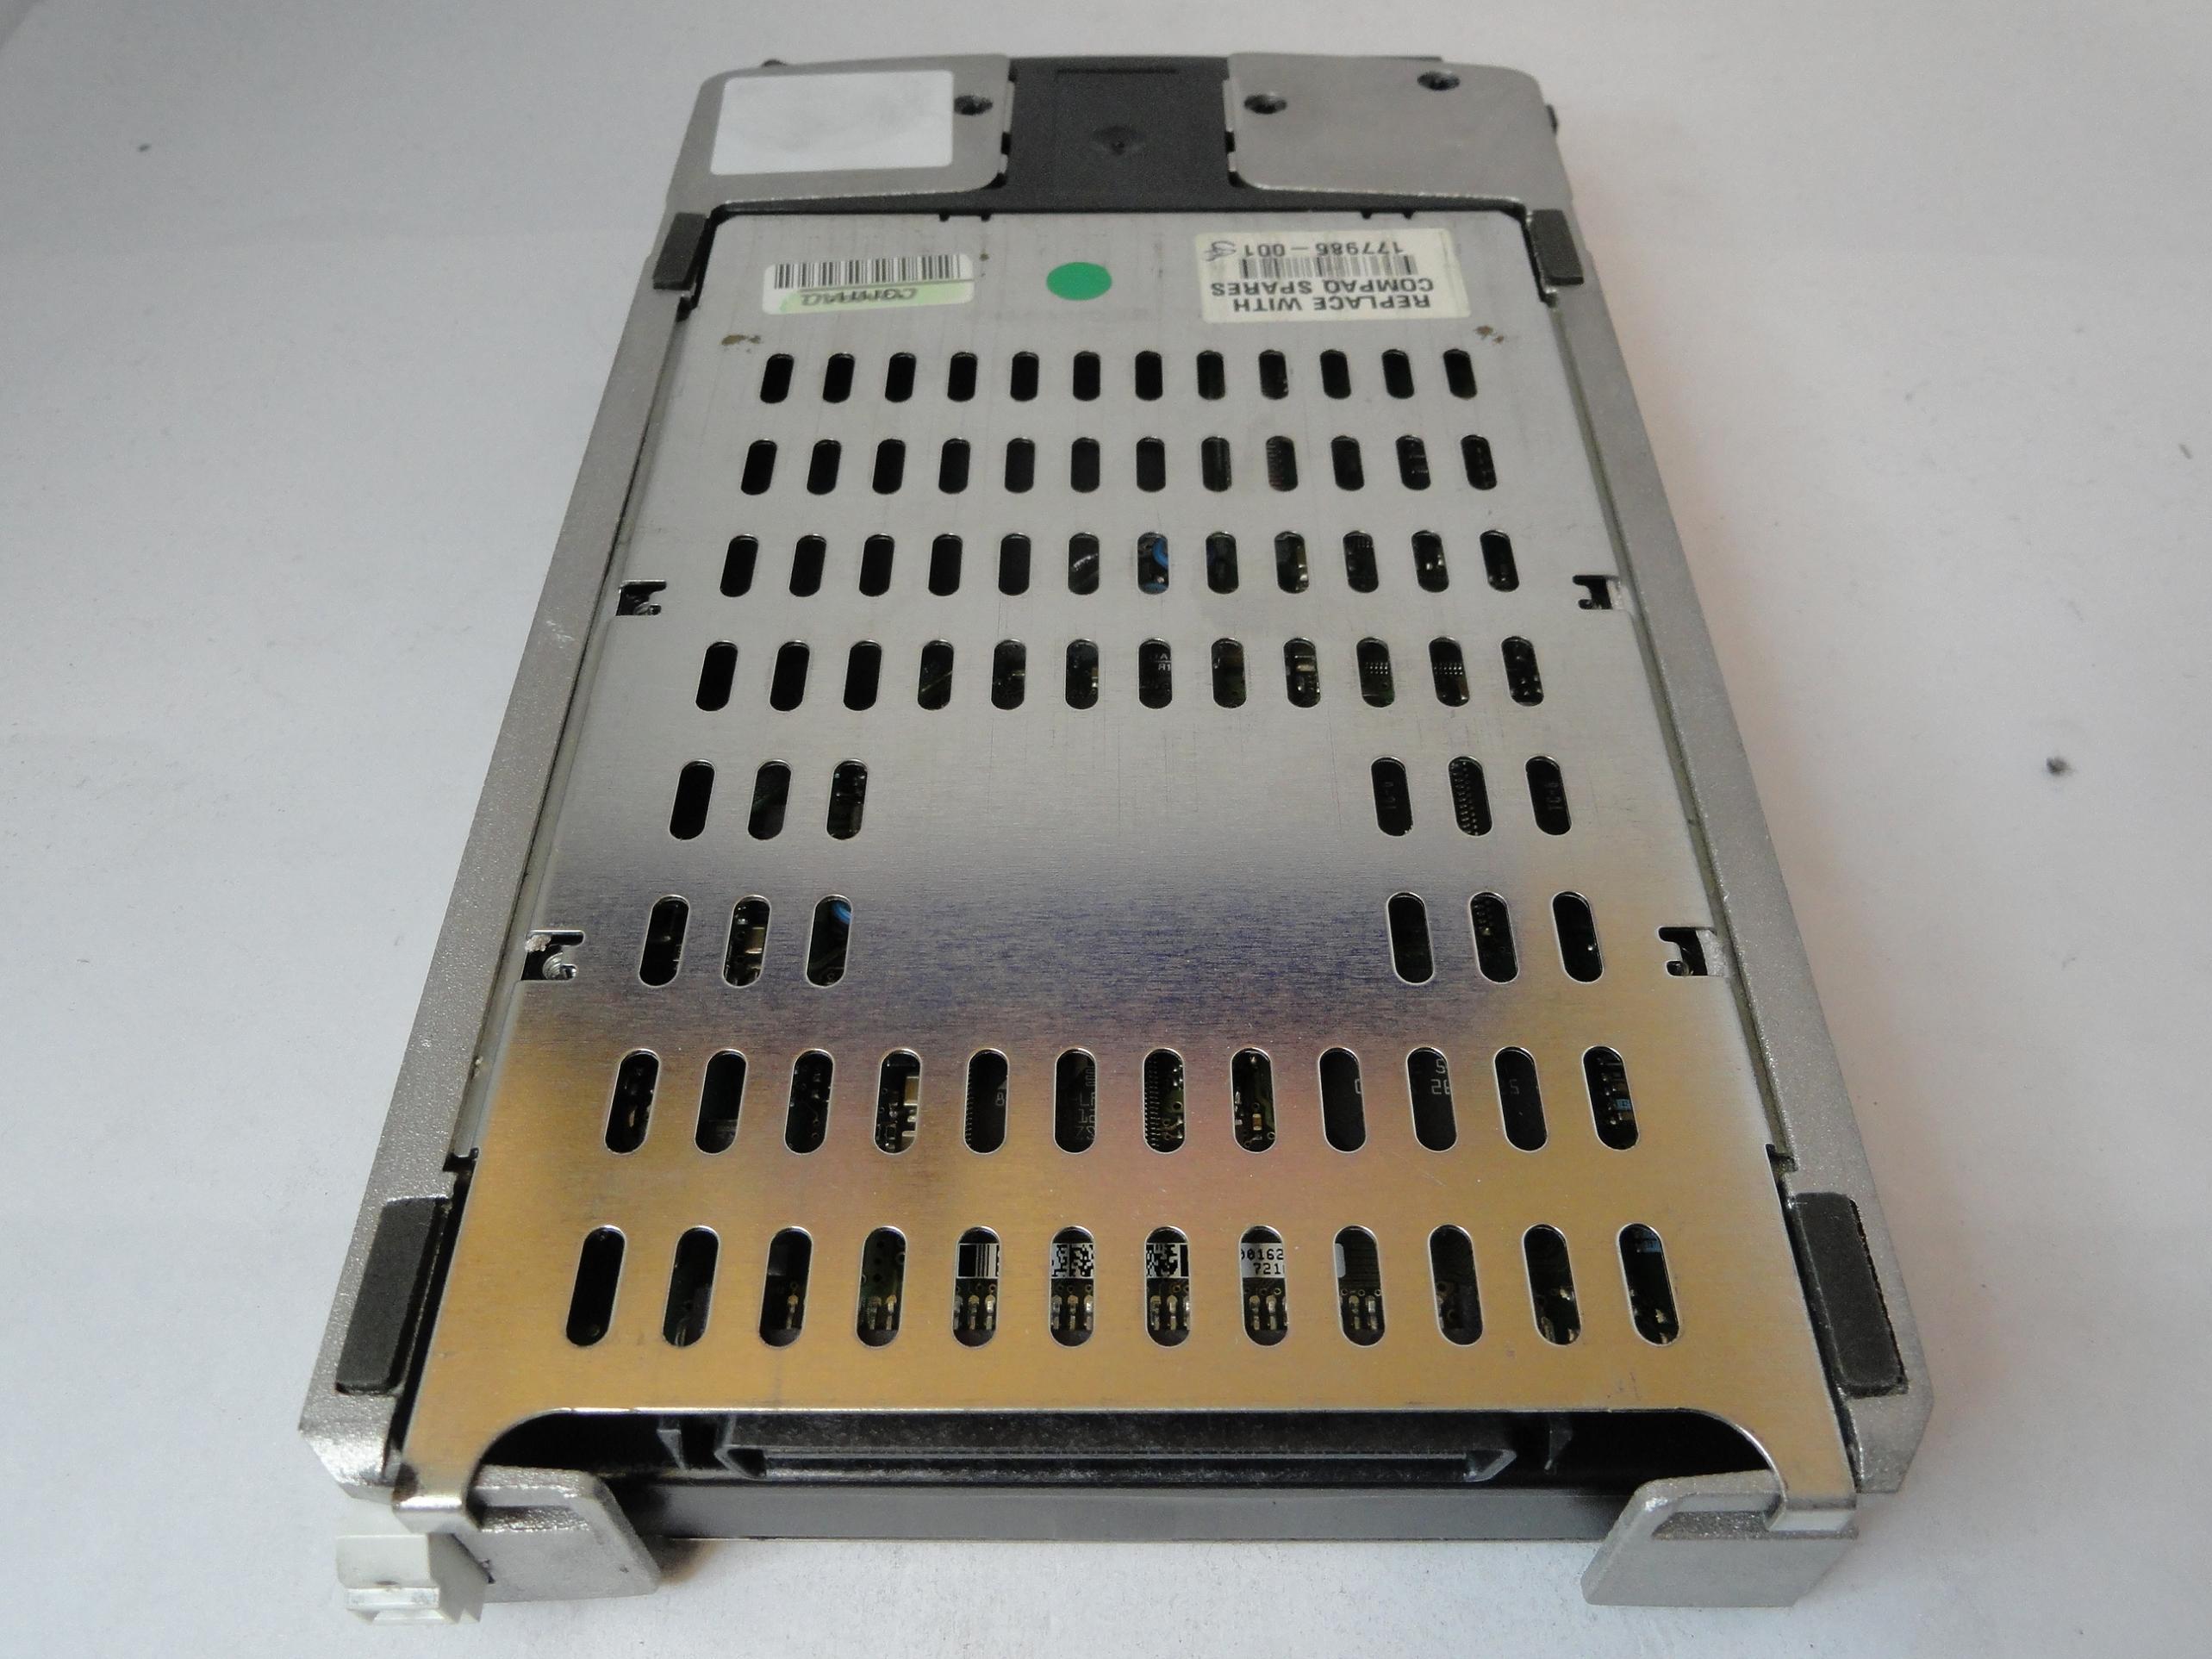 9T9001-030 - Seagate Compaq 36.4GB SCSI 80 Pin 10Krpm 3.5in HDD in Caddy - Refurbished